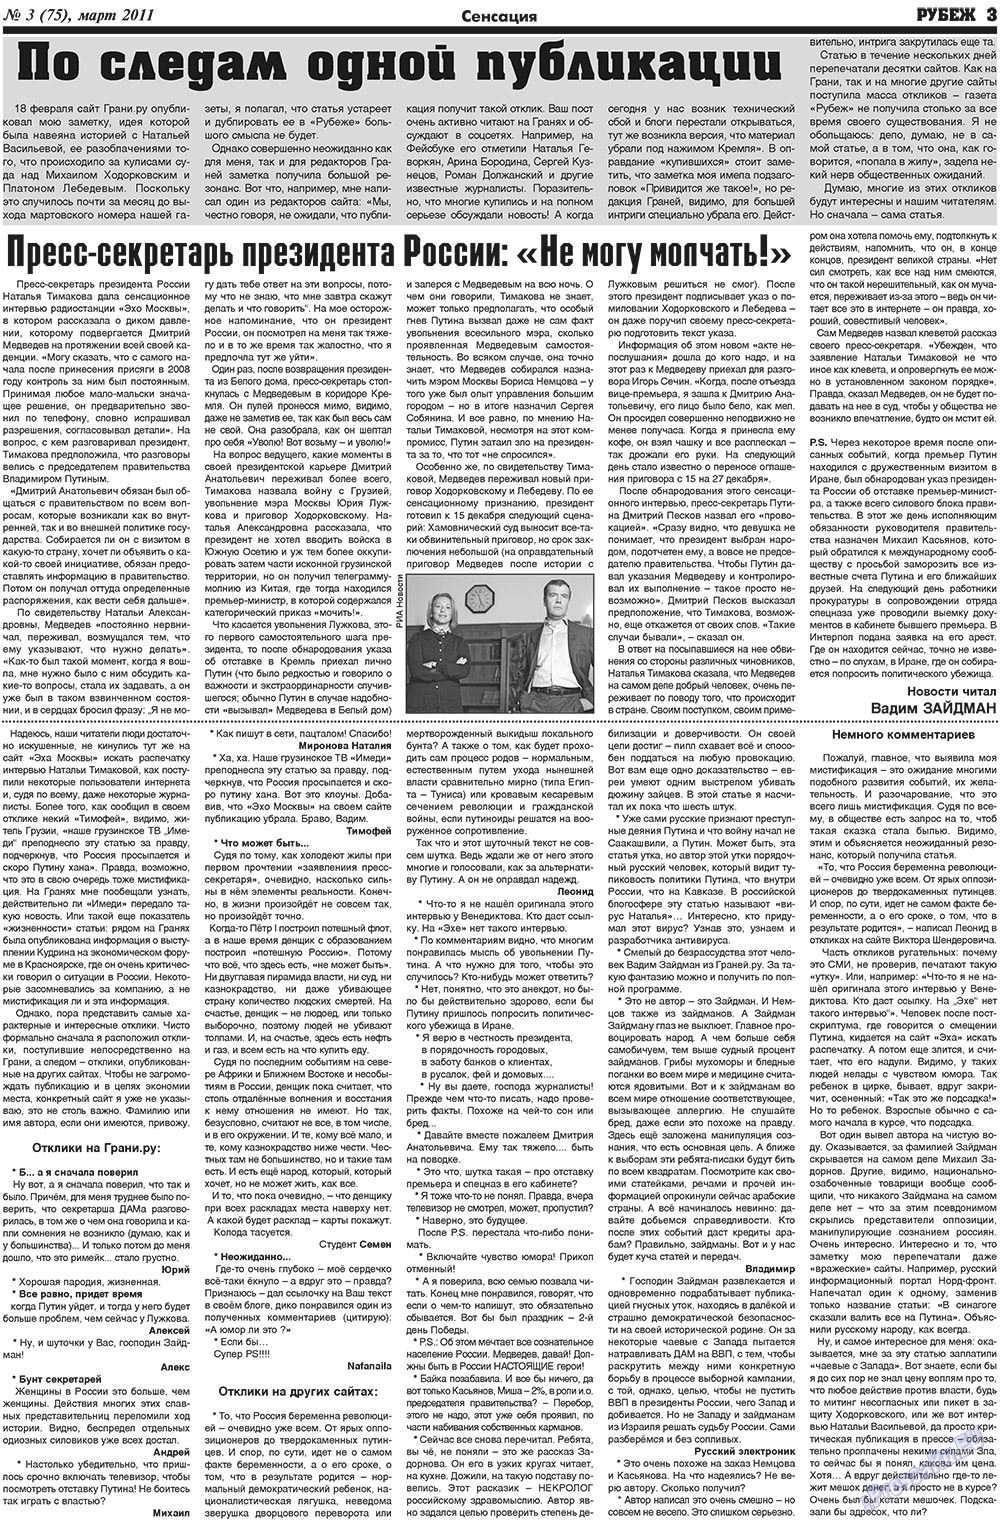 Рубеж (газета). 2011 год, номер 3, стр. 3